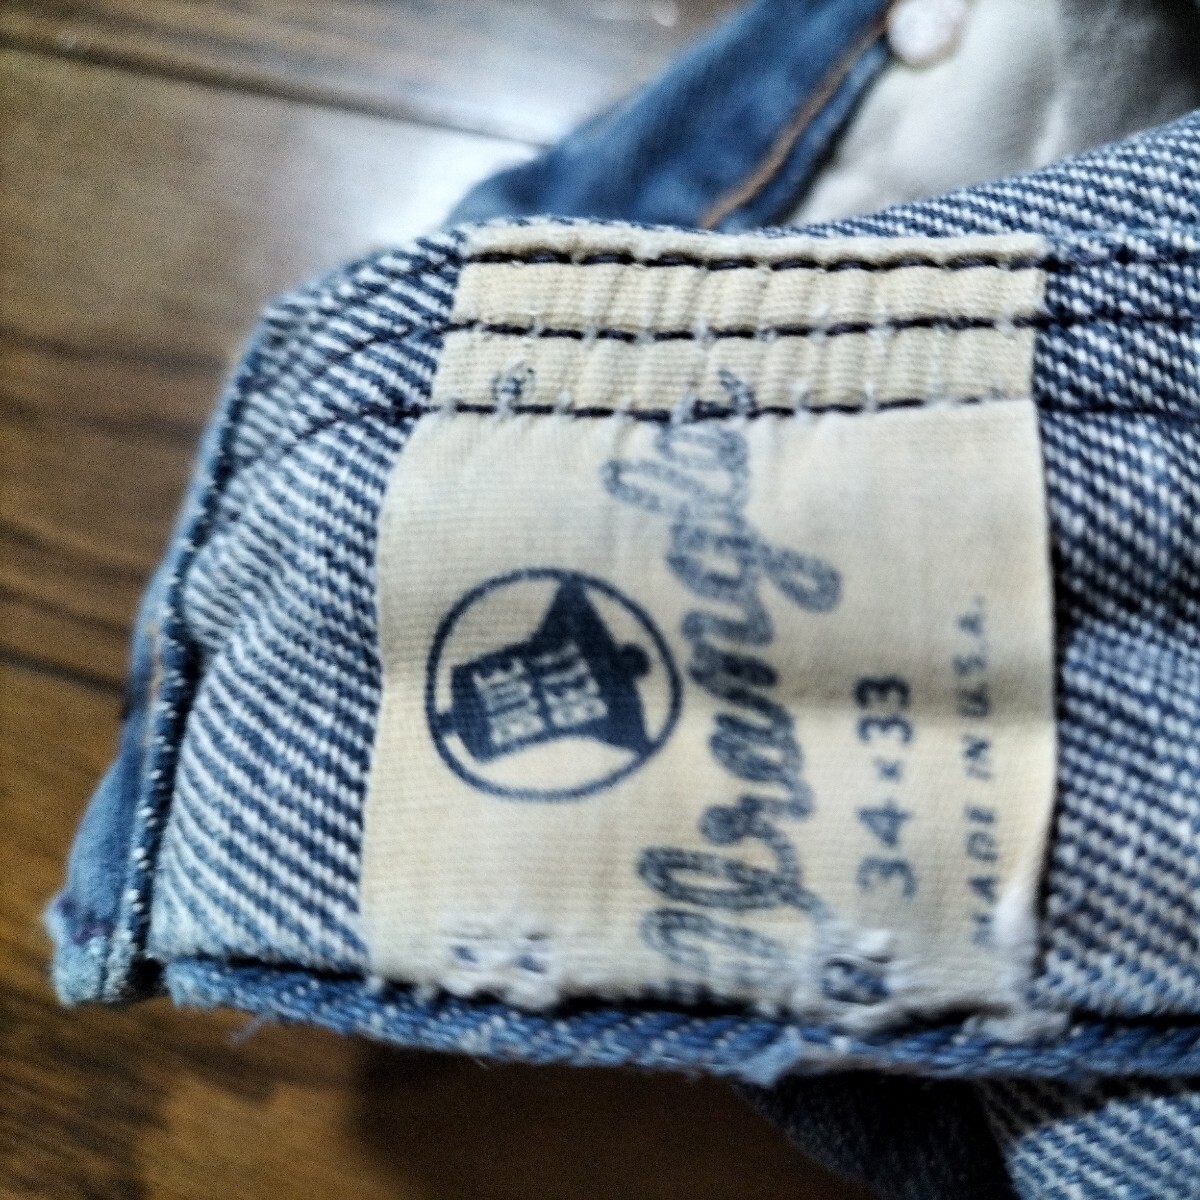  Vintage USA made Wrangler Wrangler Denim pants zipper 